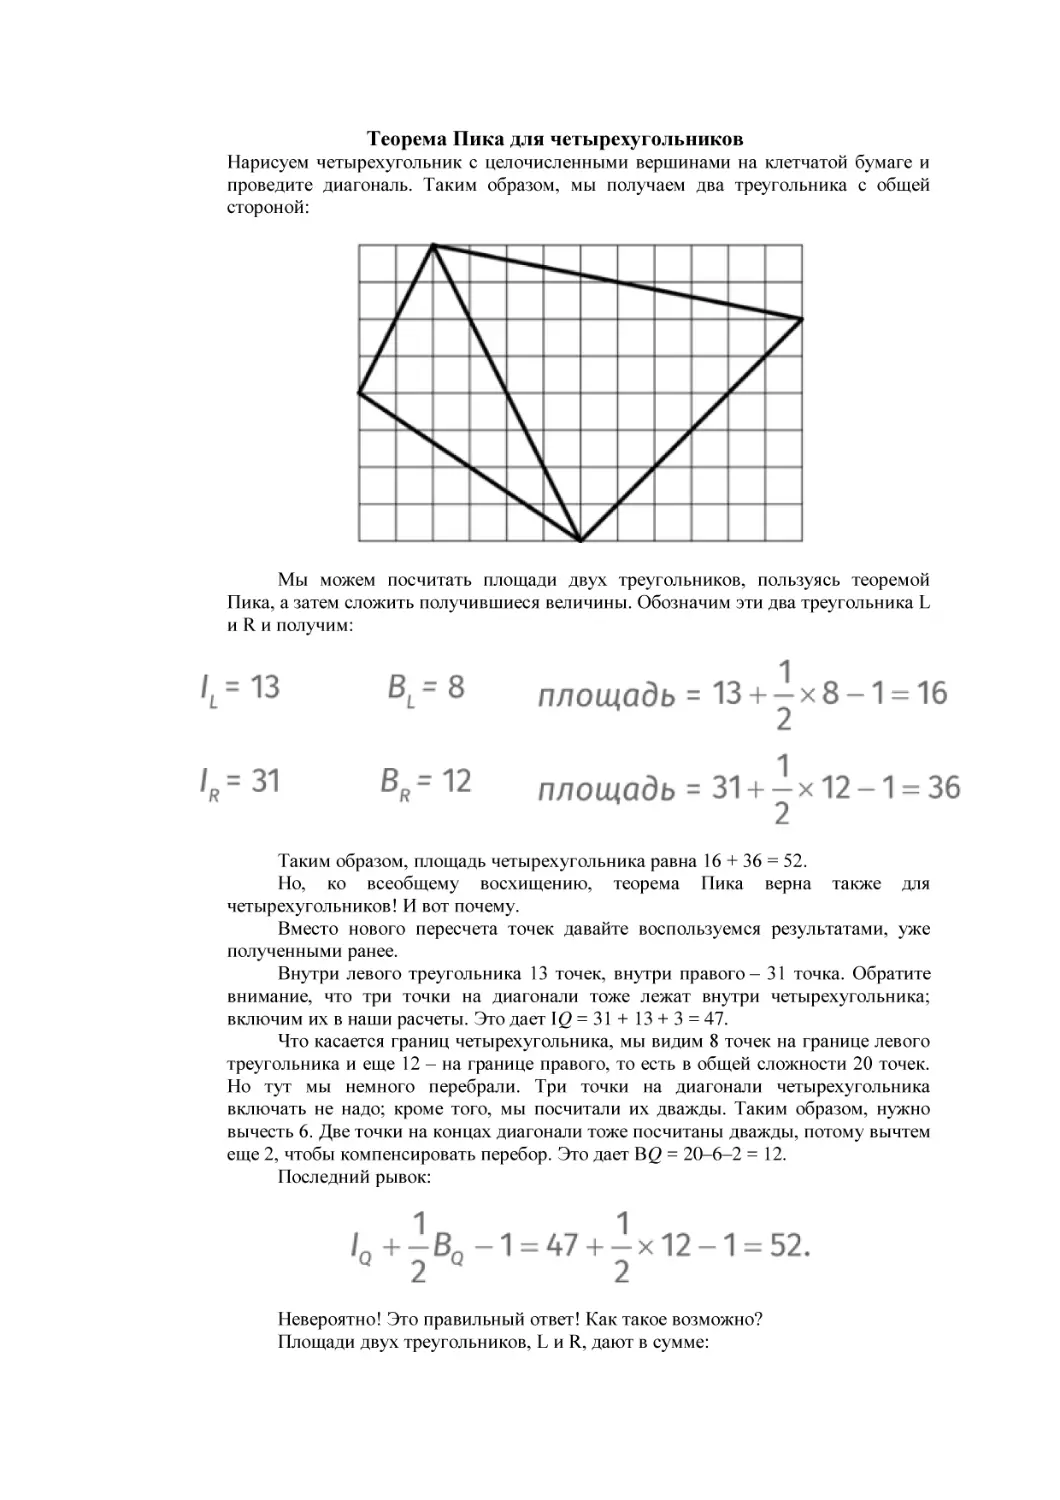 Теорема Пика для четырехугольников